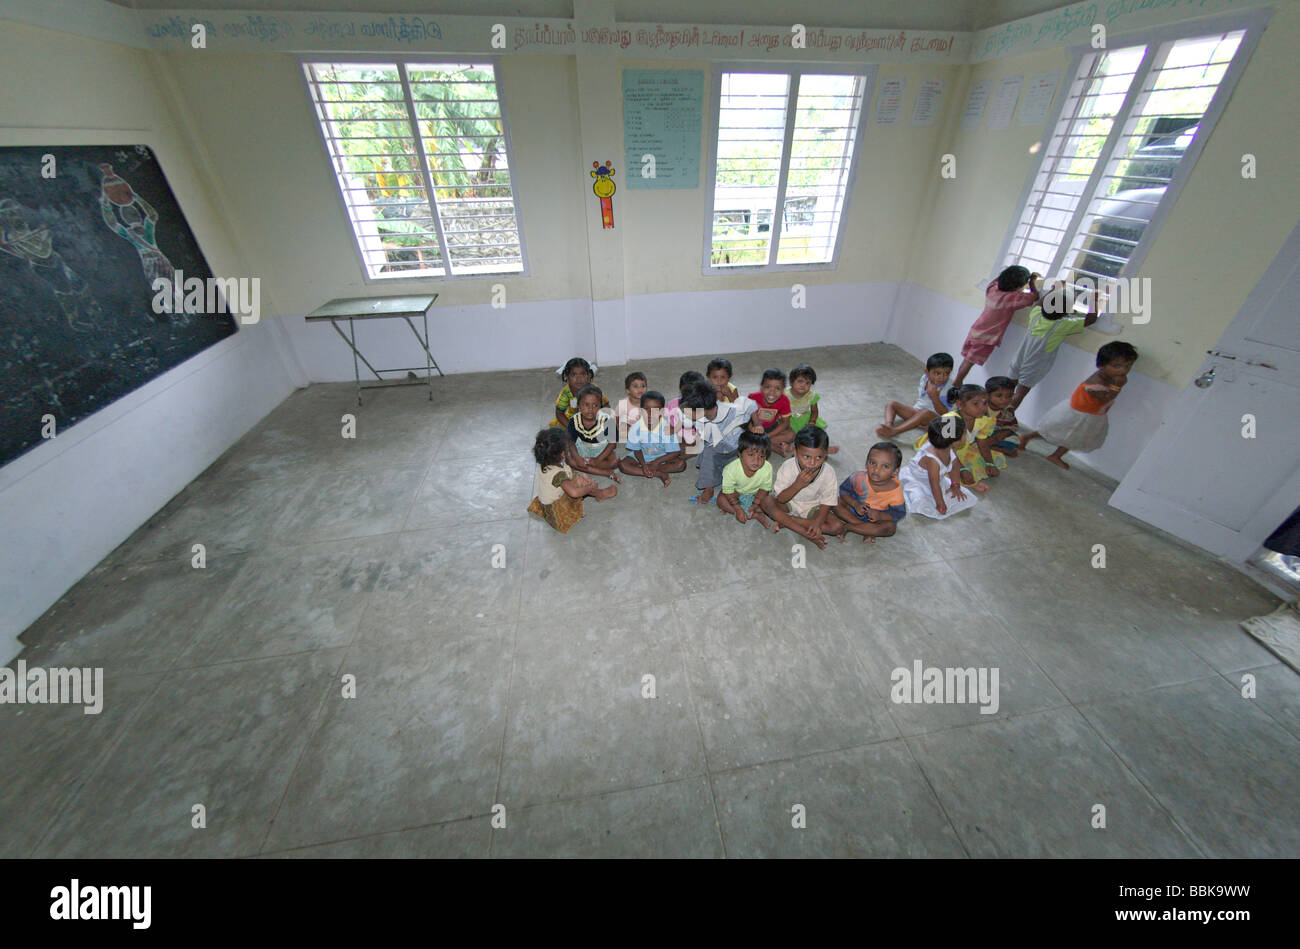 Kleinen Kindern in einem der Chennai suburban Slums Kindergärten. Indien, Tamil Nadu, Chennai (Madras). Keine Releases zur Verfügung. Stockfoto